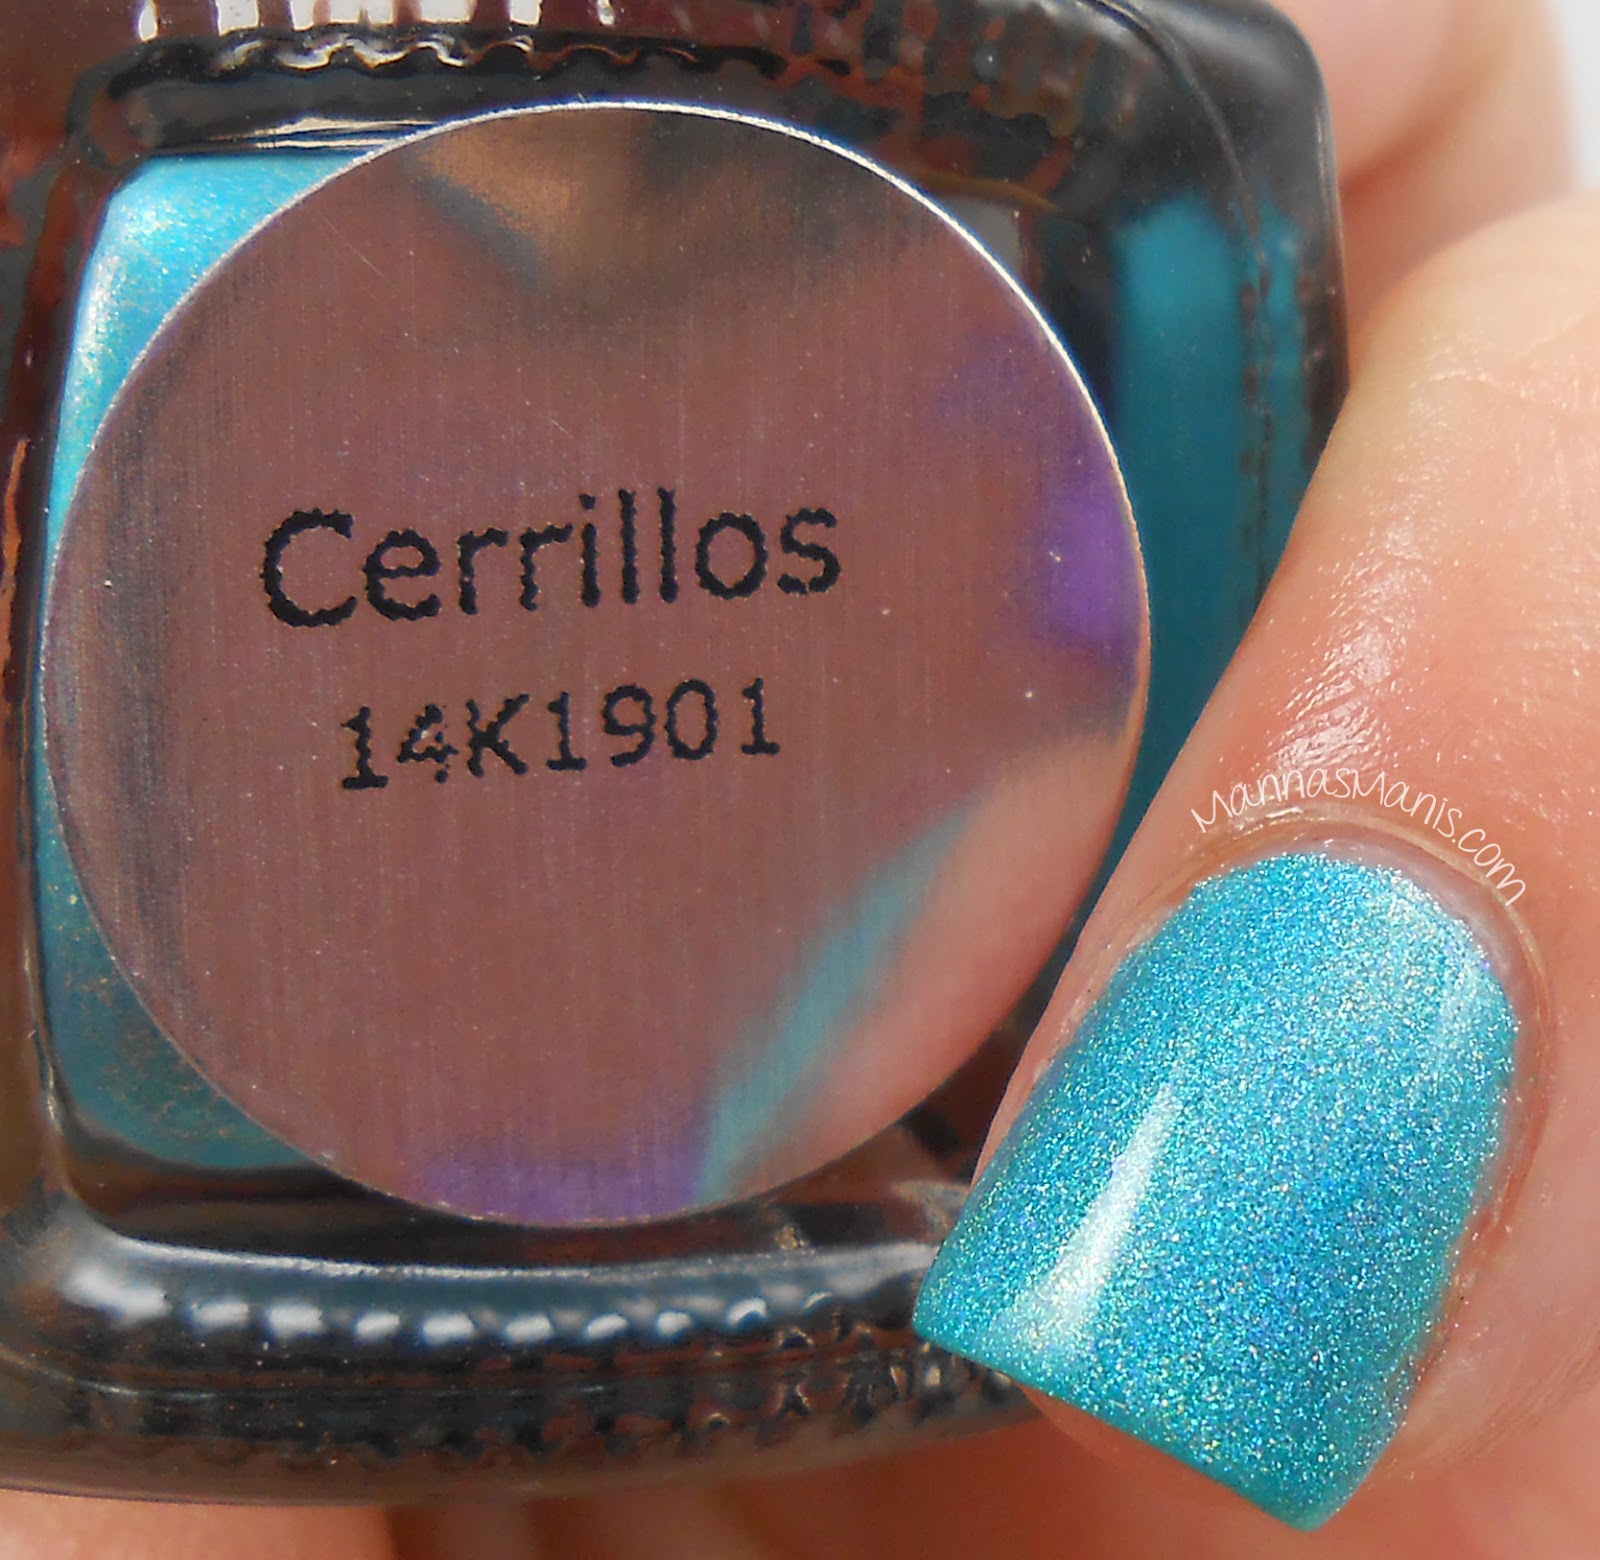 cirque colors cerrillos, a blue holographic nail polish